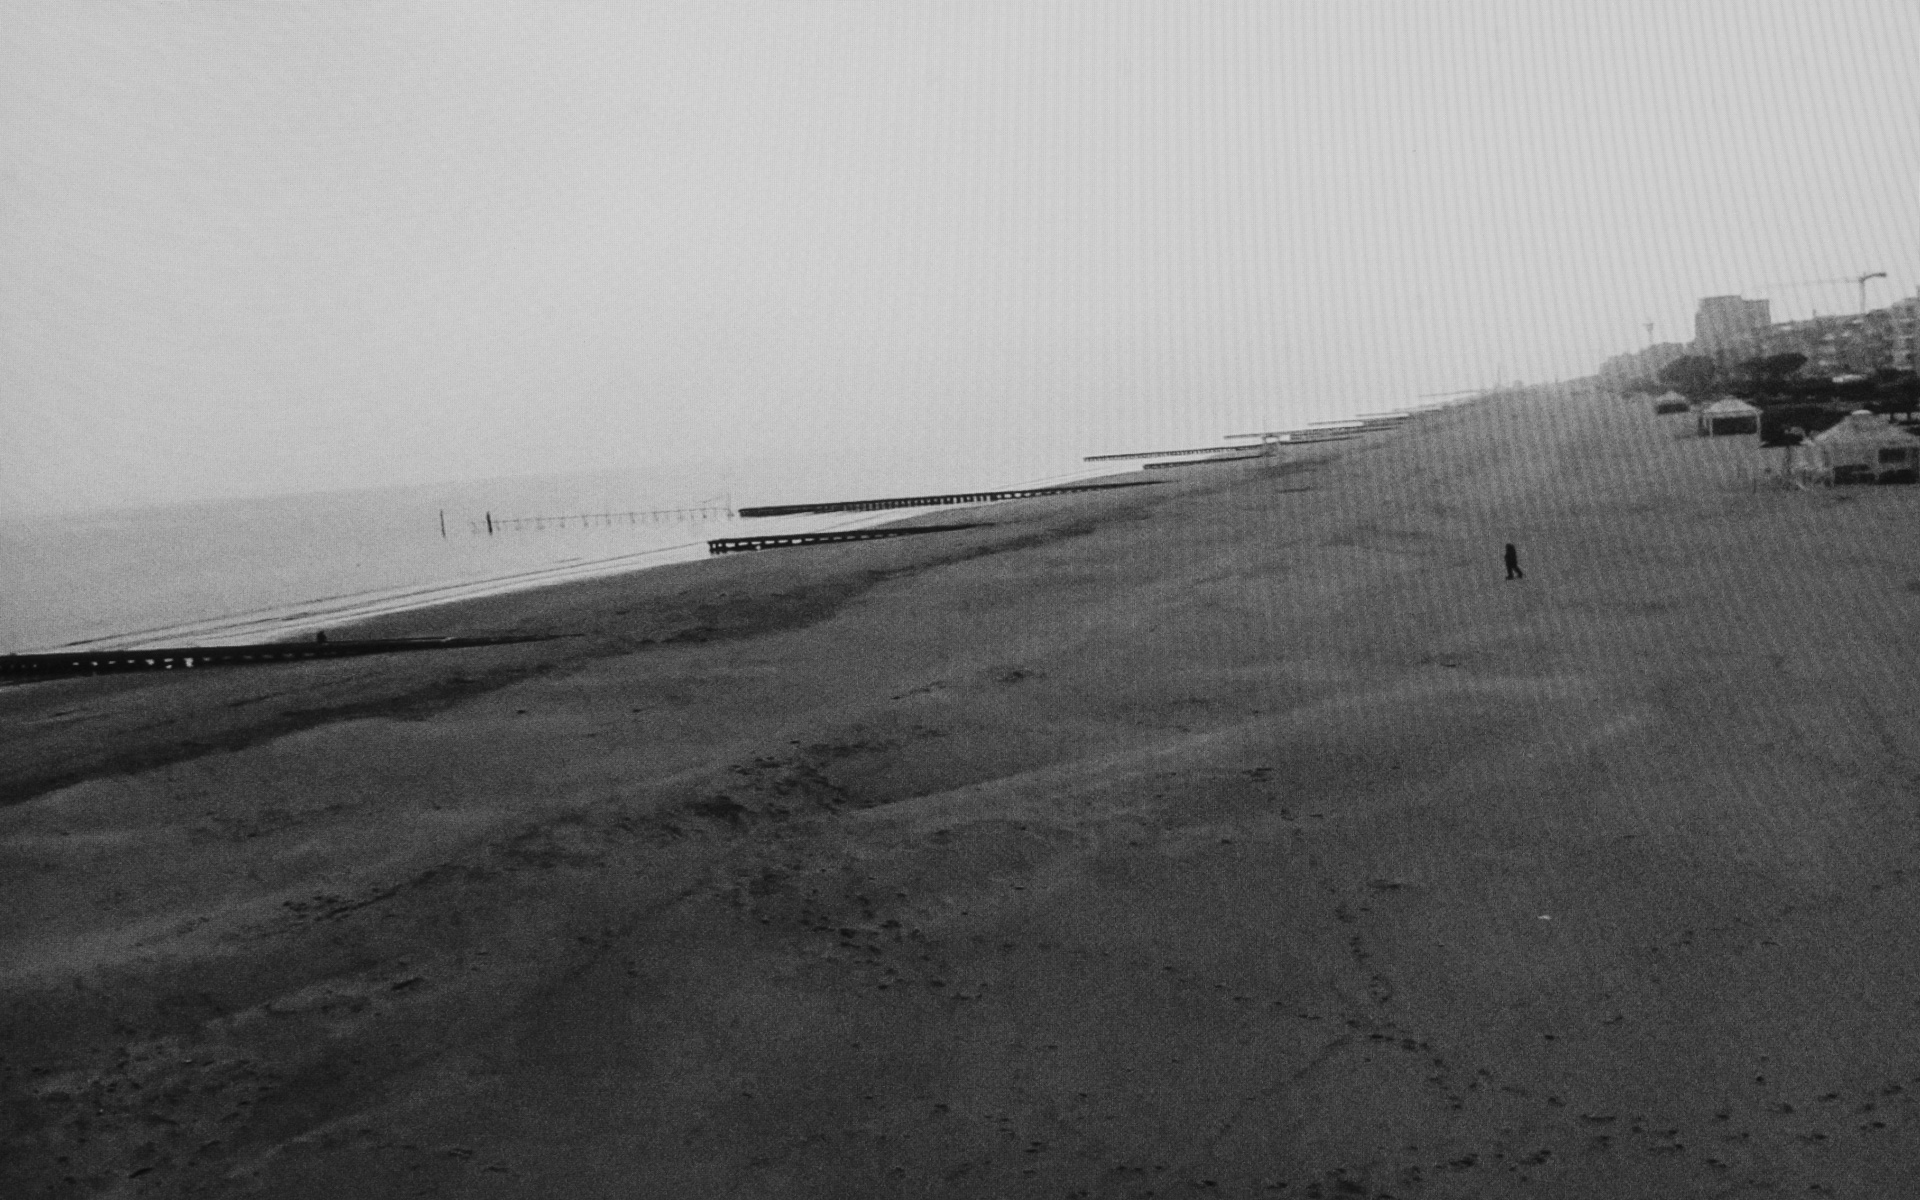 Jesolo, Beach - A man crossing the empty beach. Jesolo, Venice province, March 29. 2020.